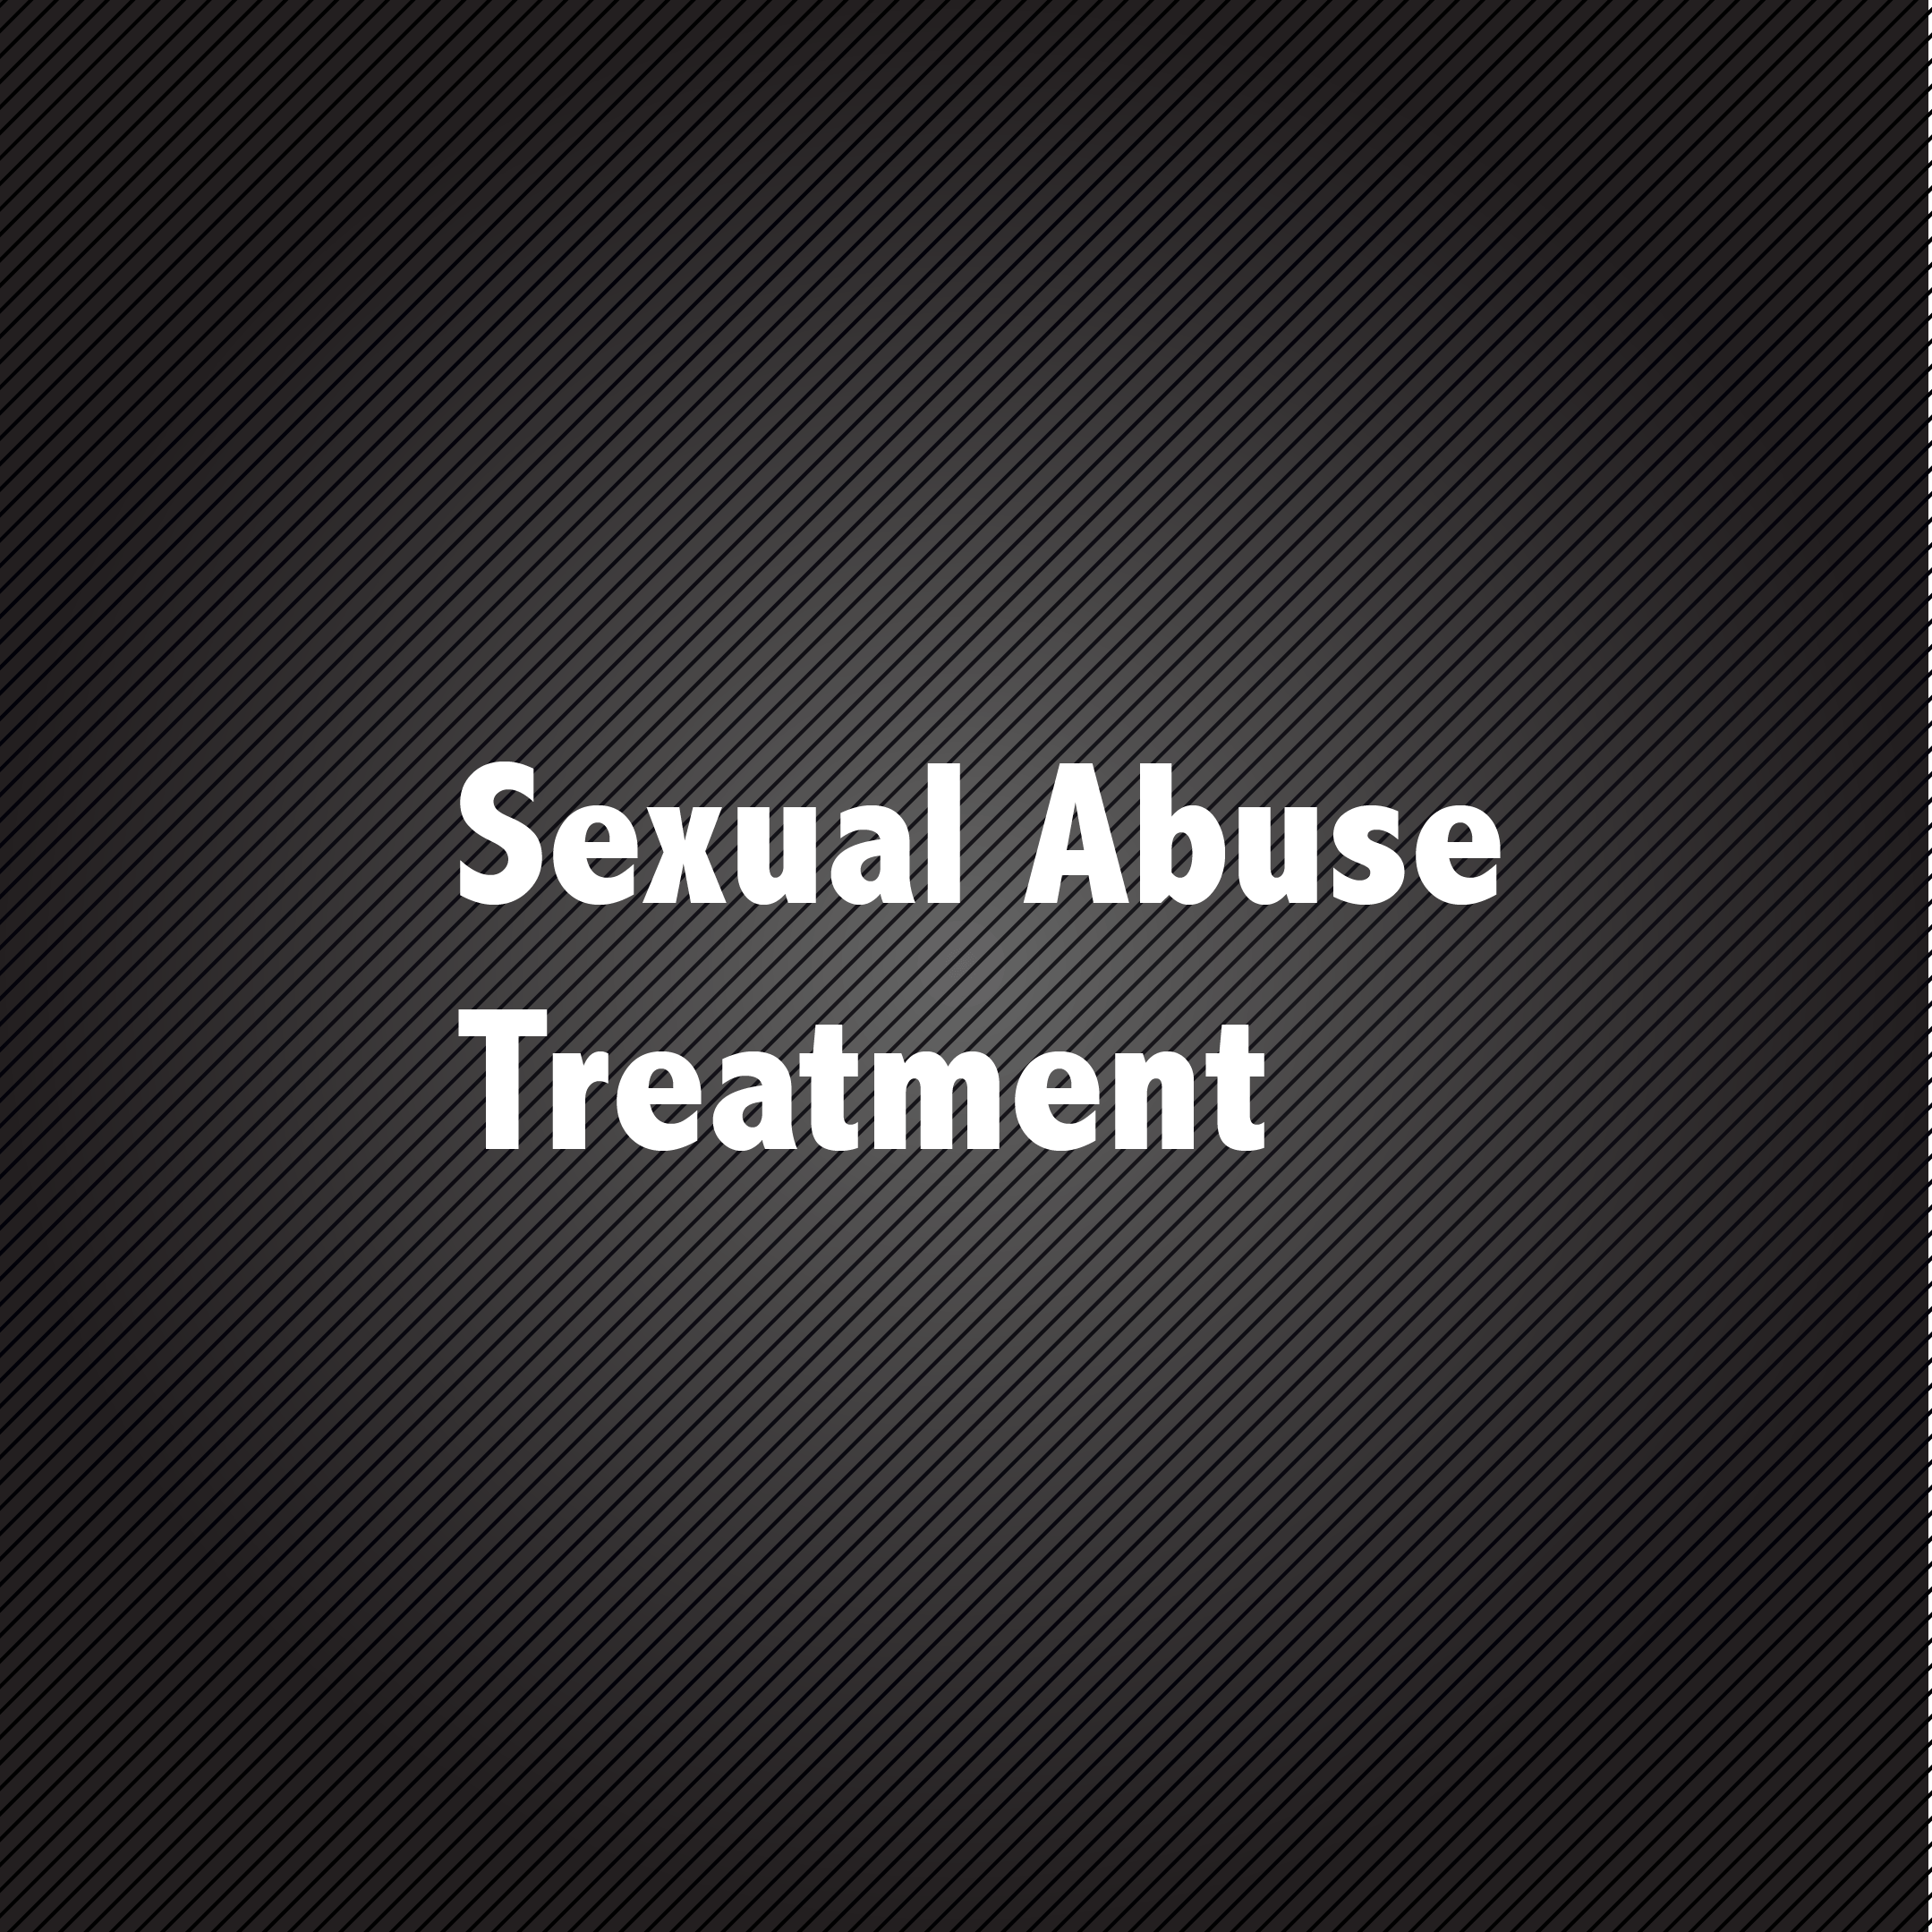 Psy.d Logo - Sexual Abuse TreatmentPresenter:Blaise Amendolace, Psy.D